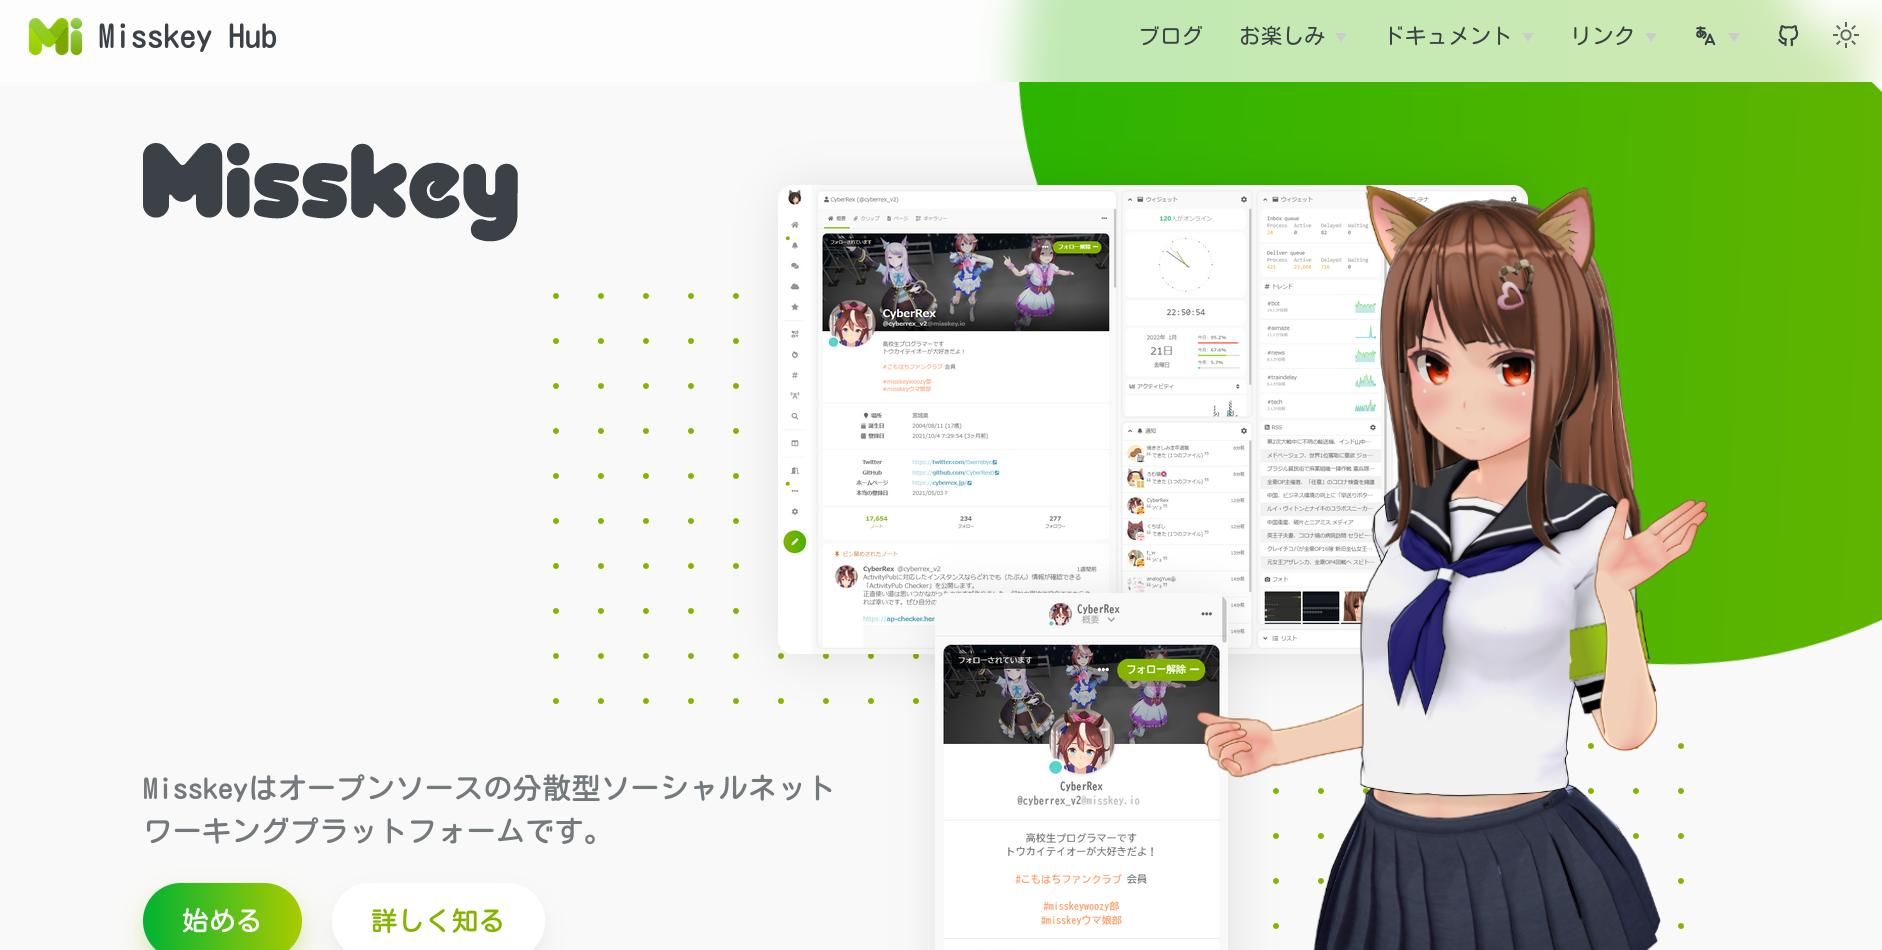 trang chủ misskey hiển thị các ký tự tiếng Nhật và một cô gái mèo